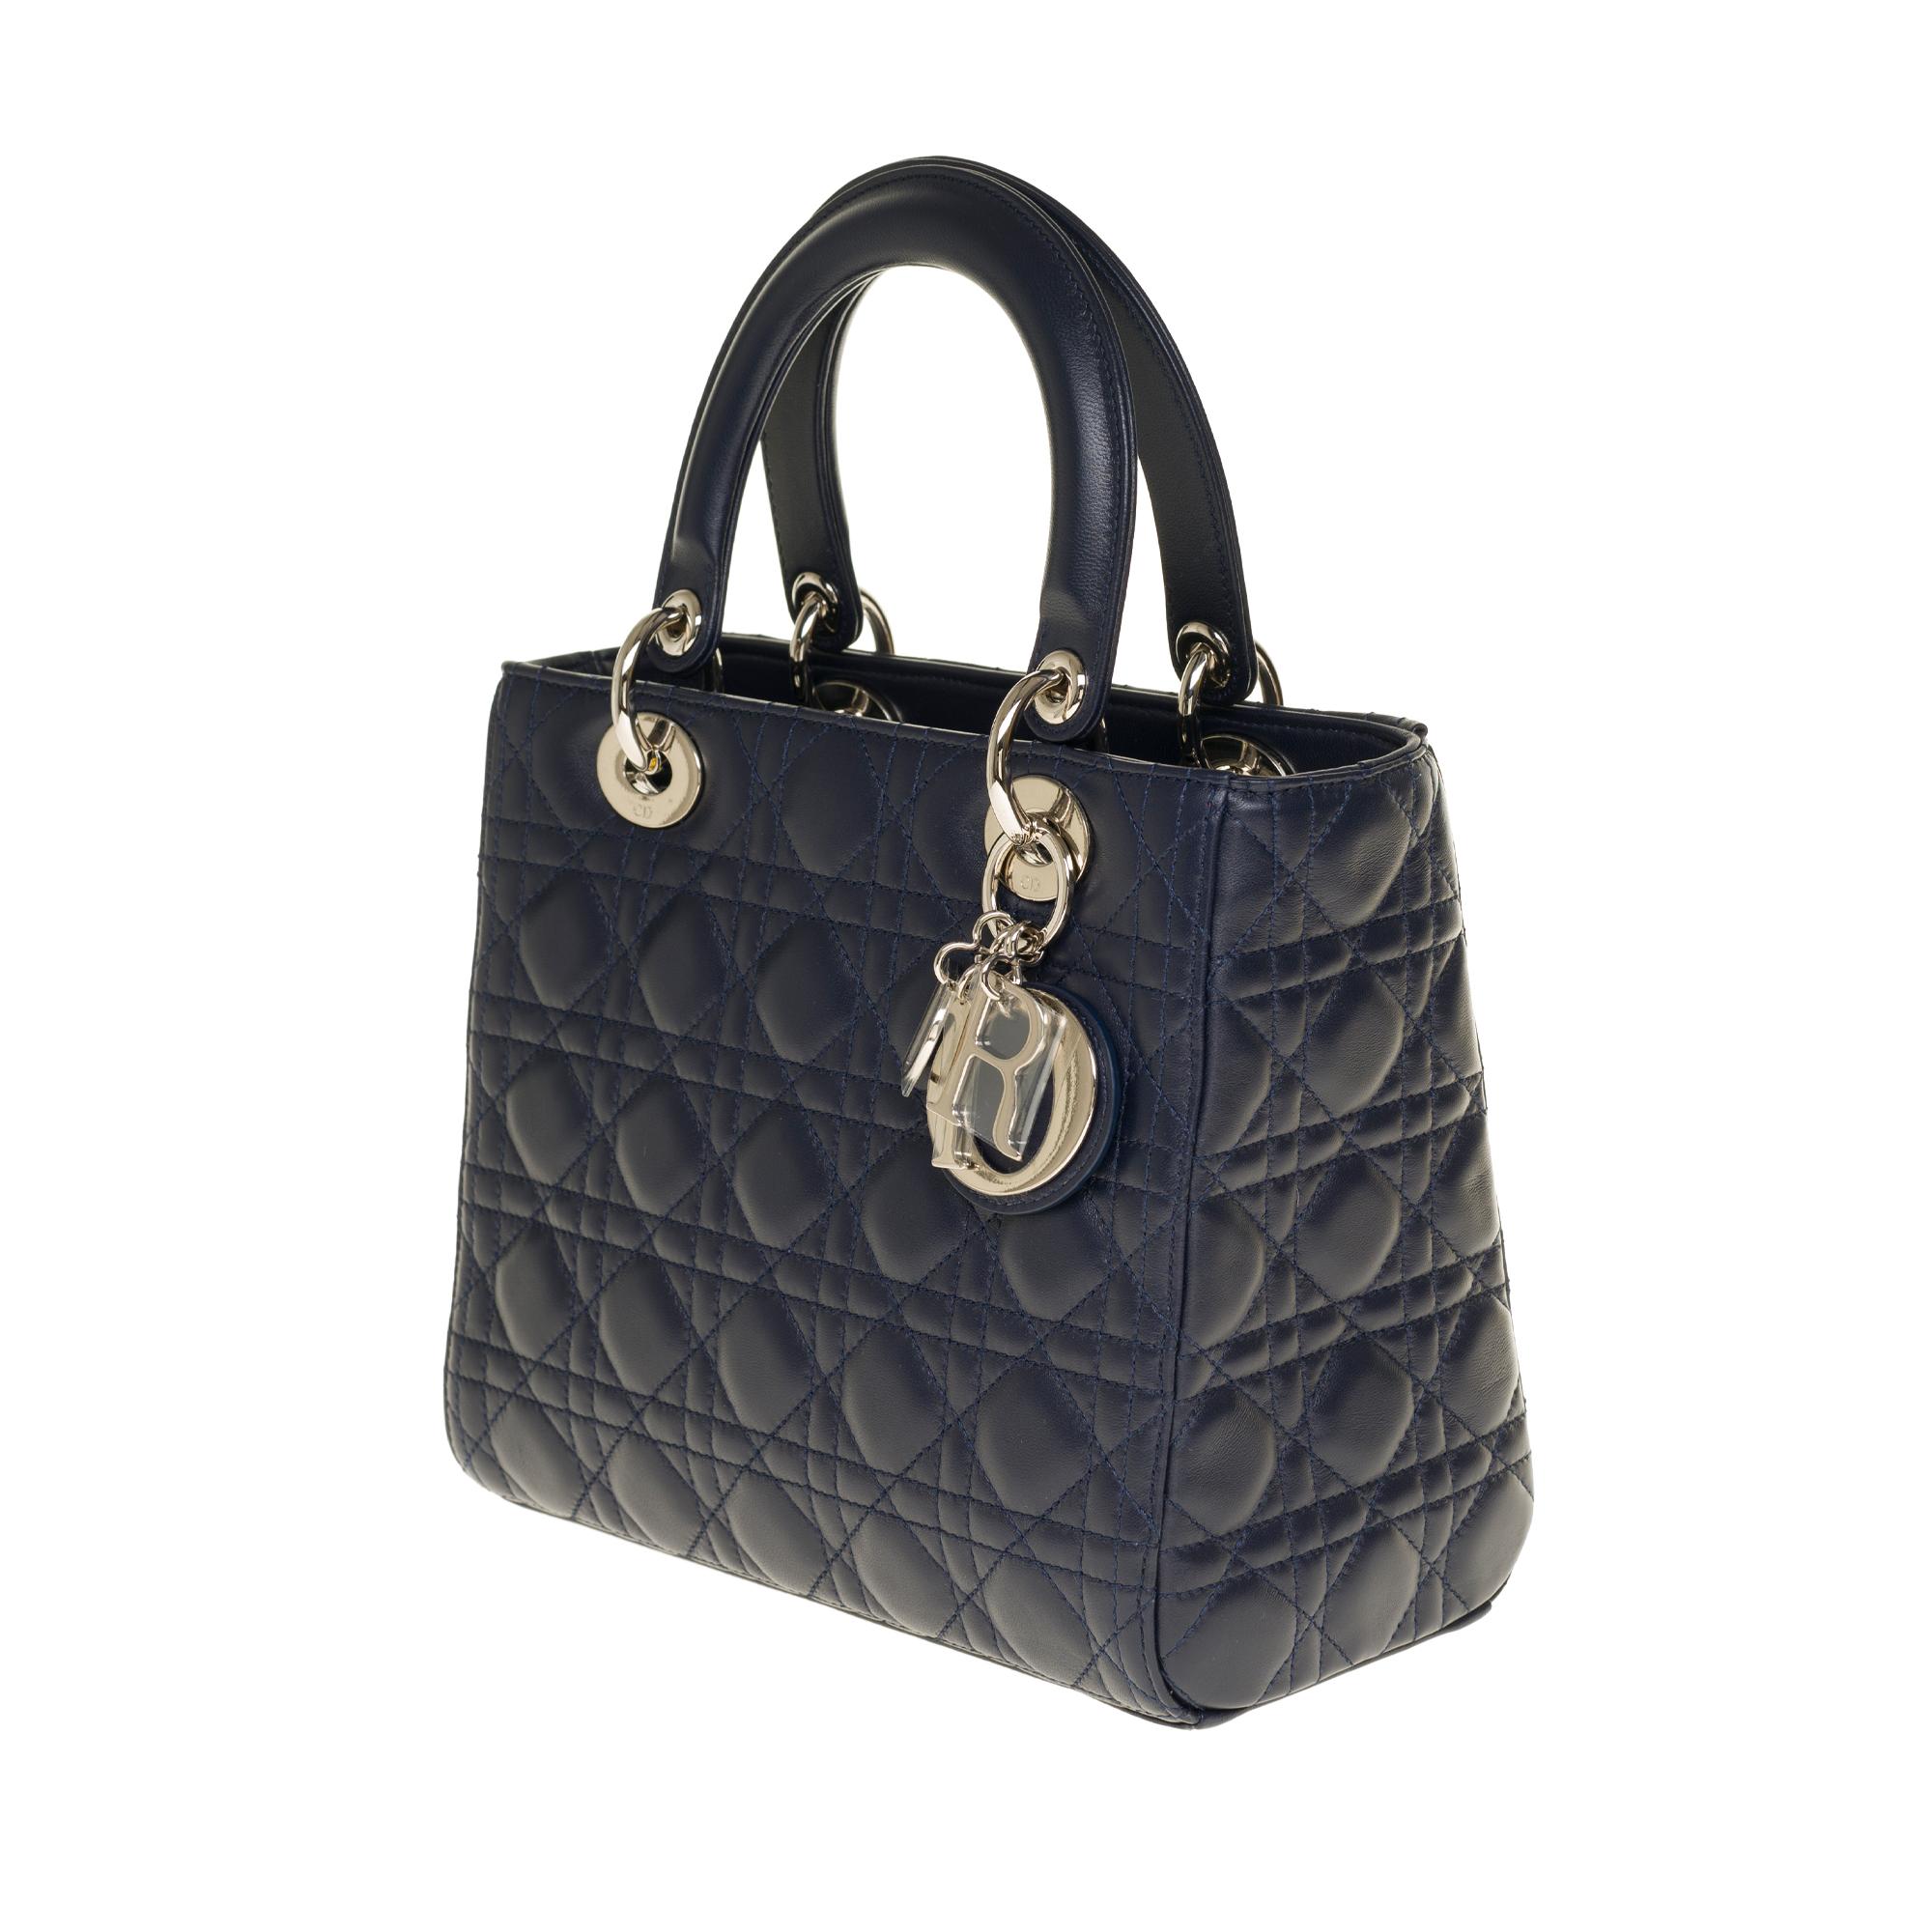 Black  Christian Dior Lady Dior Medium size handbag in blue navy cannage leather, PHW